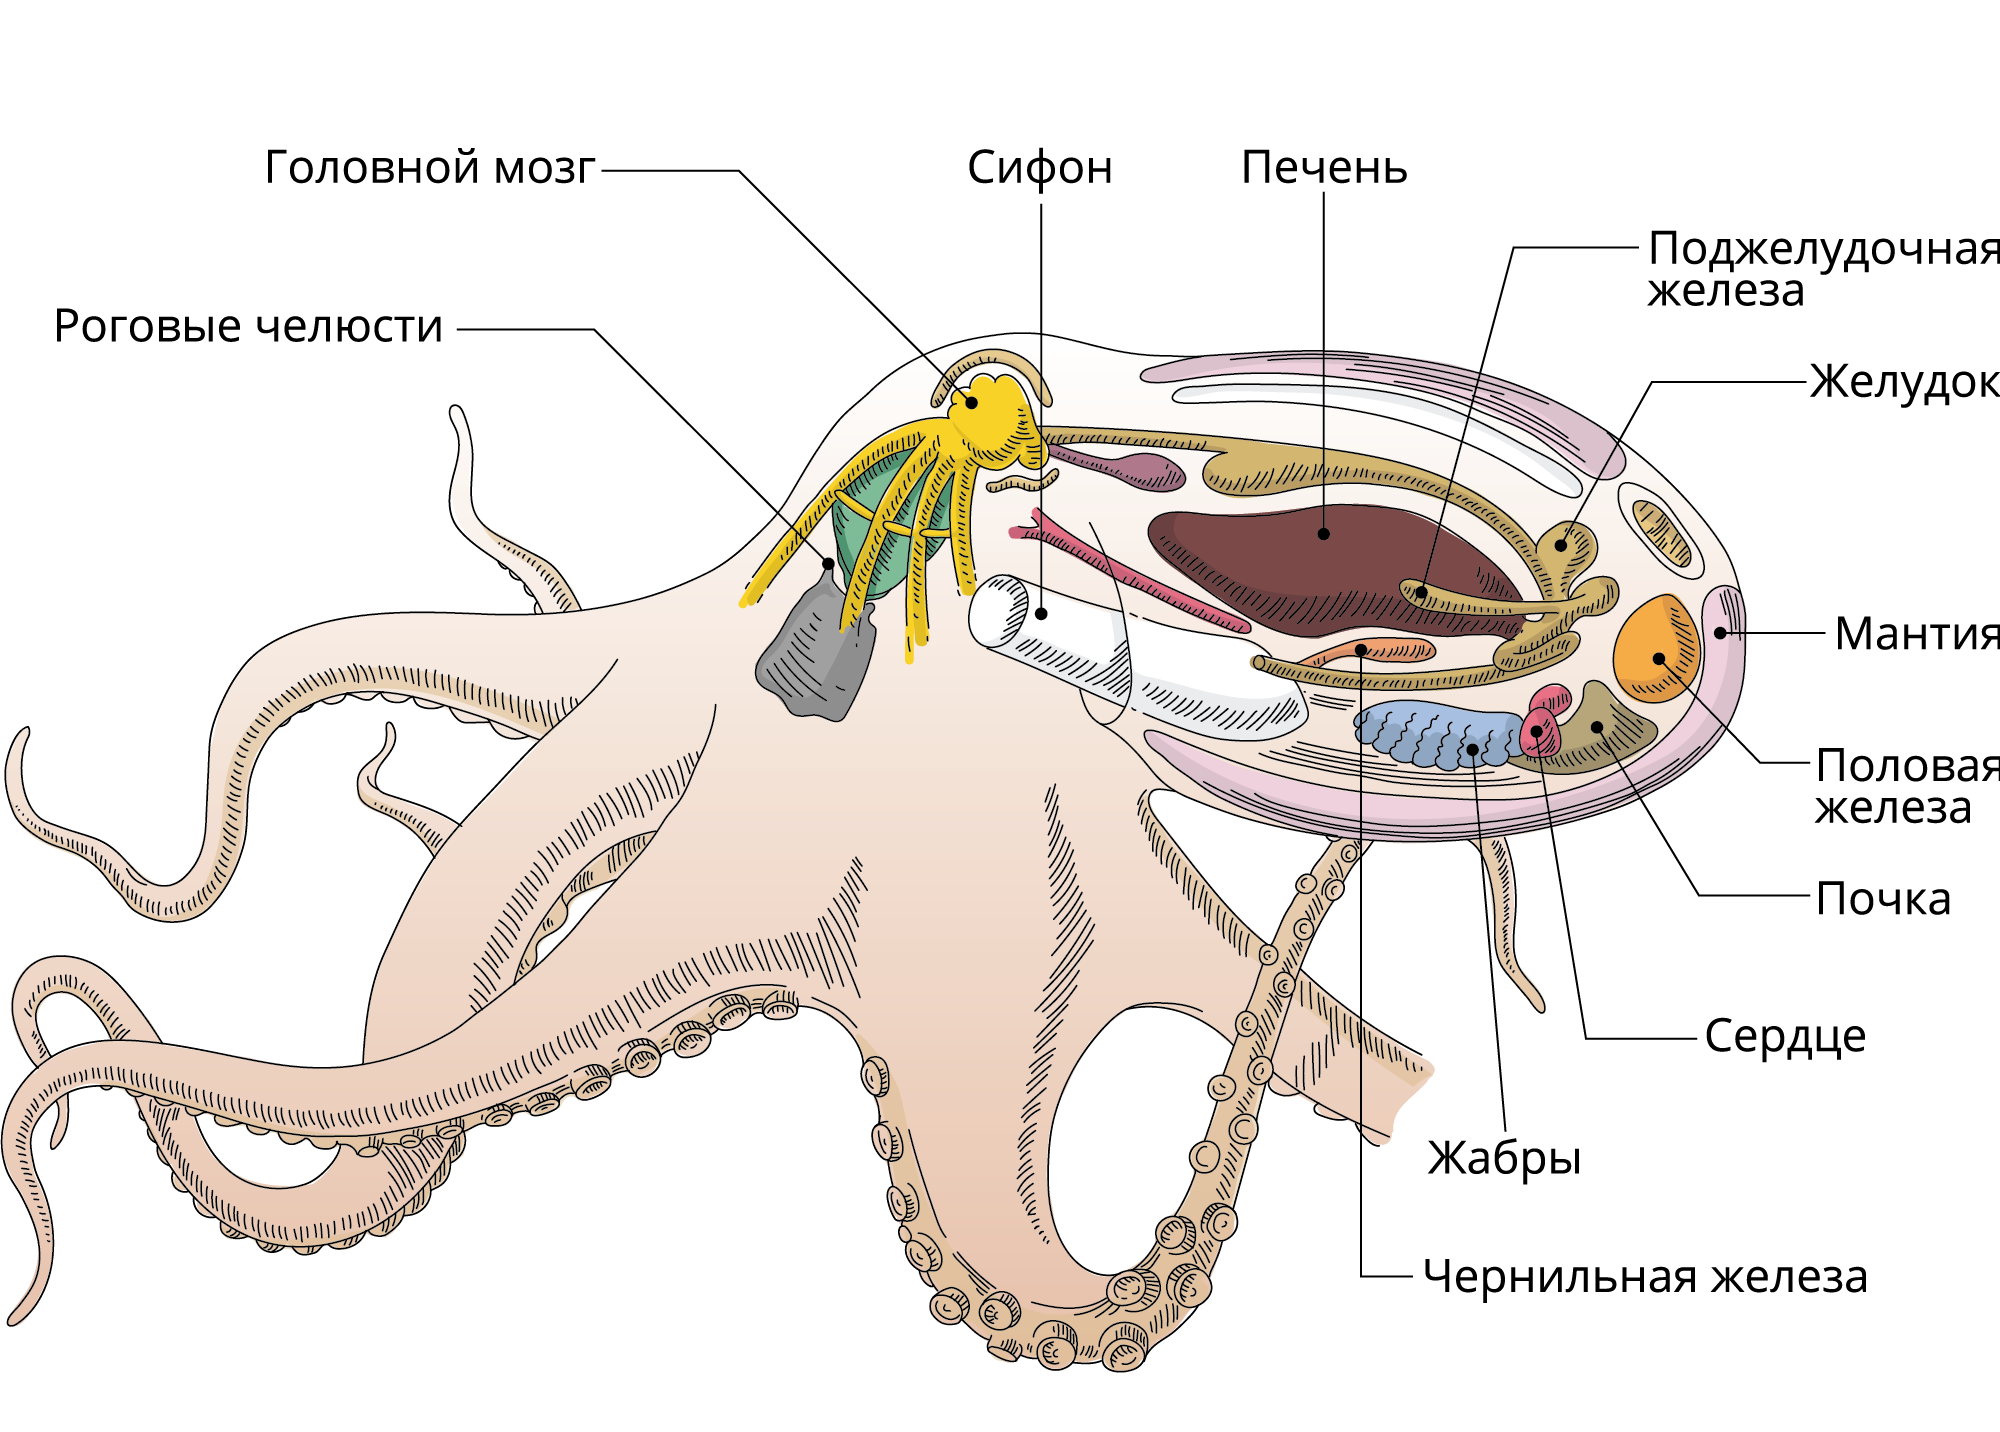 Половая головоногих. Выделительная система головоногих. Выделительная система осьминога. Осьминог анатомия выделительная система. Головоногие моллюски пищеварительная система.